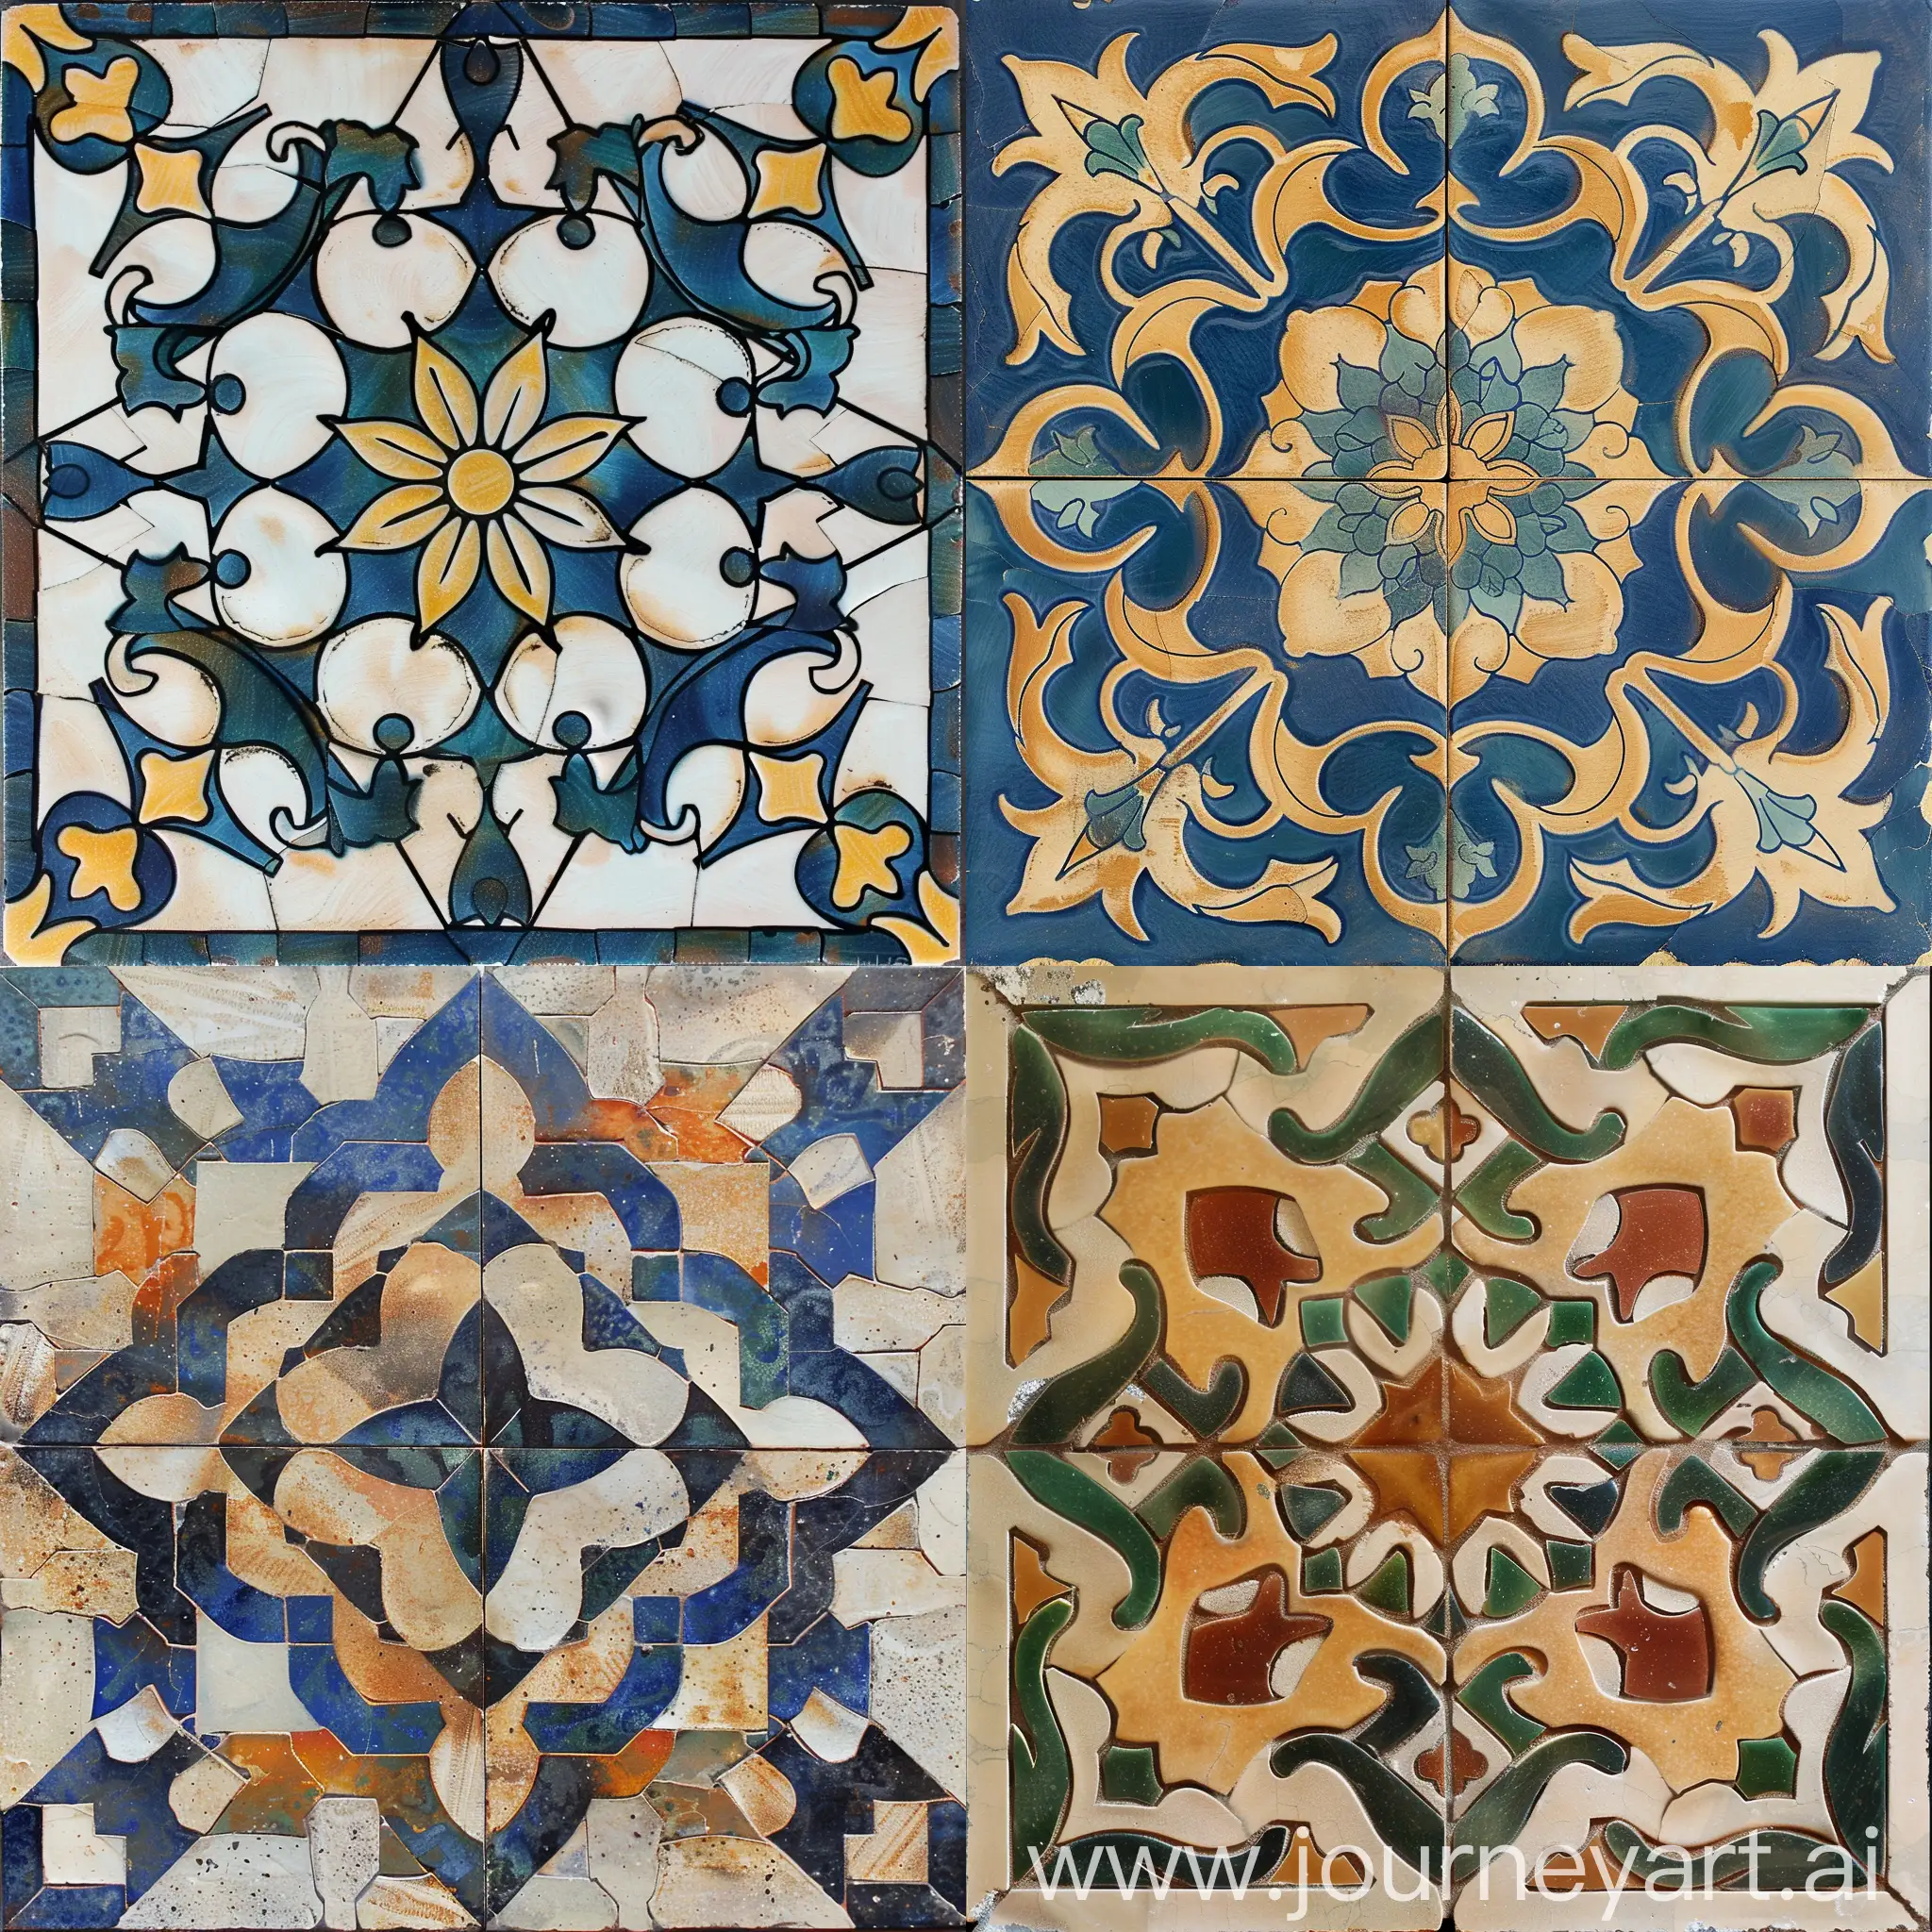 Arabesque tile decoration